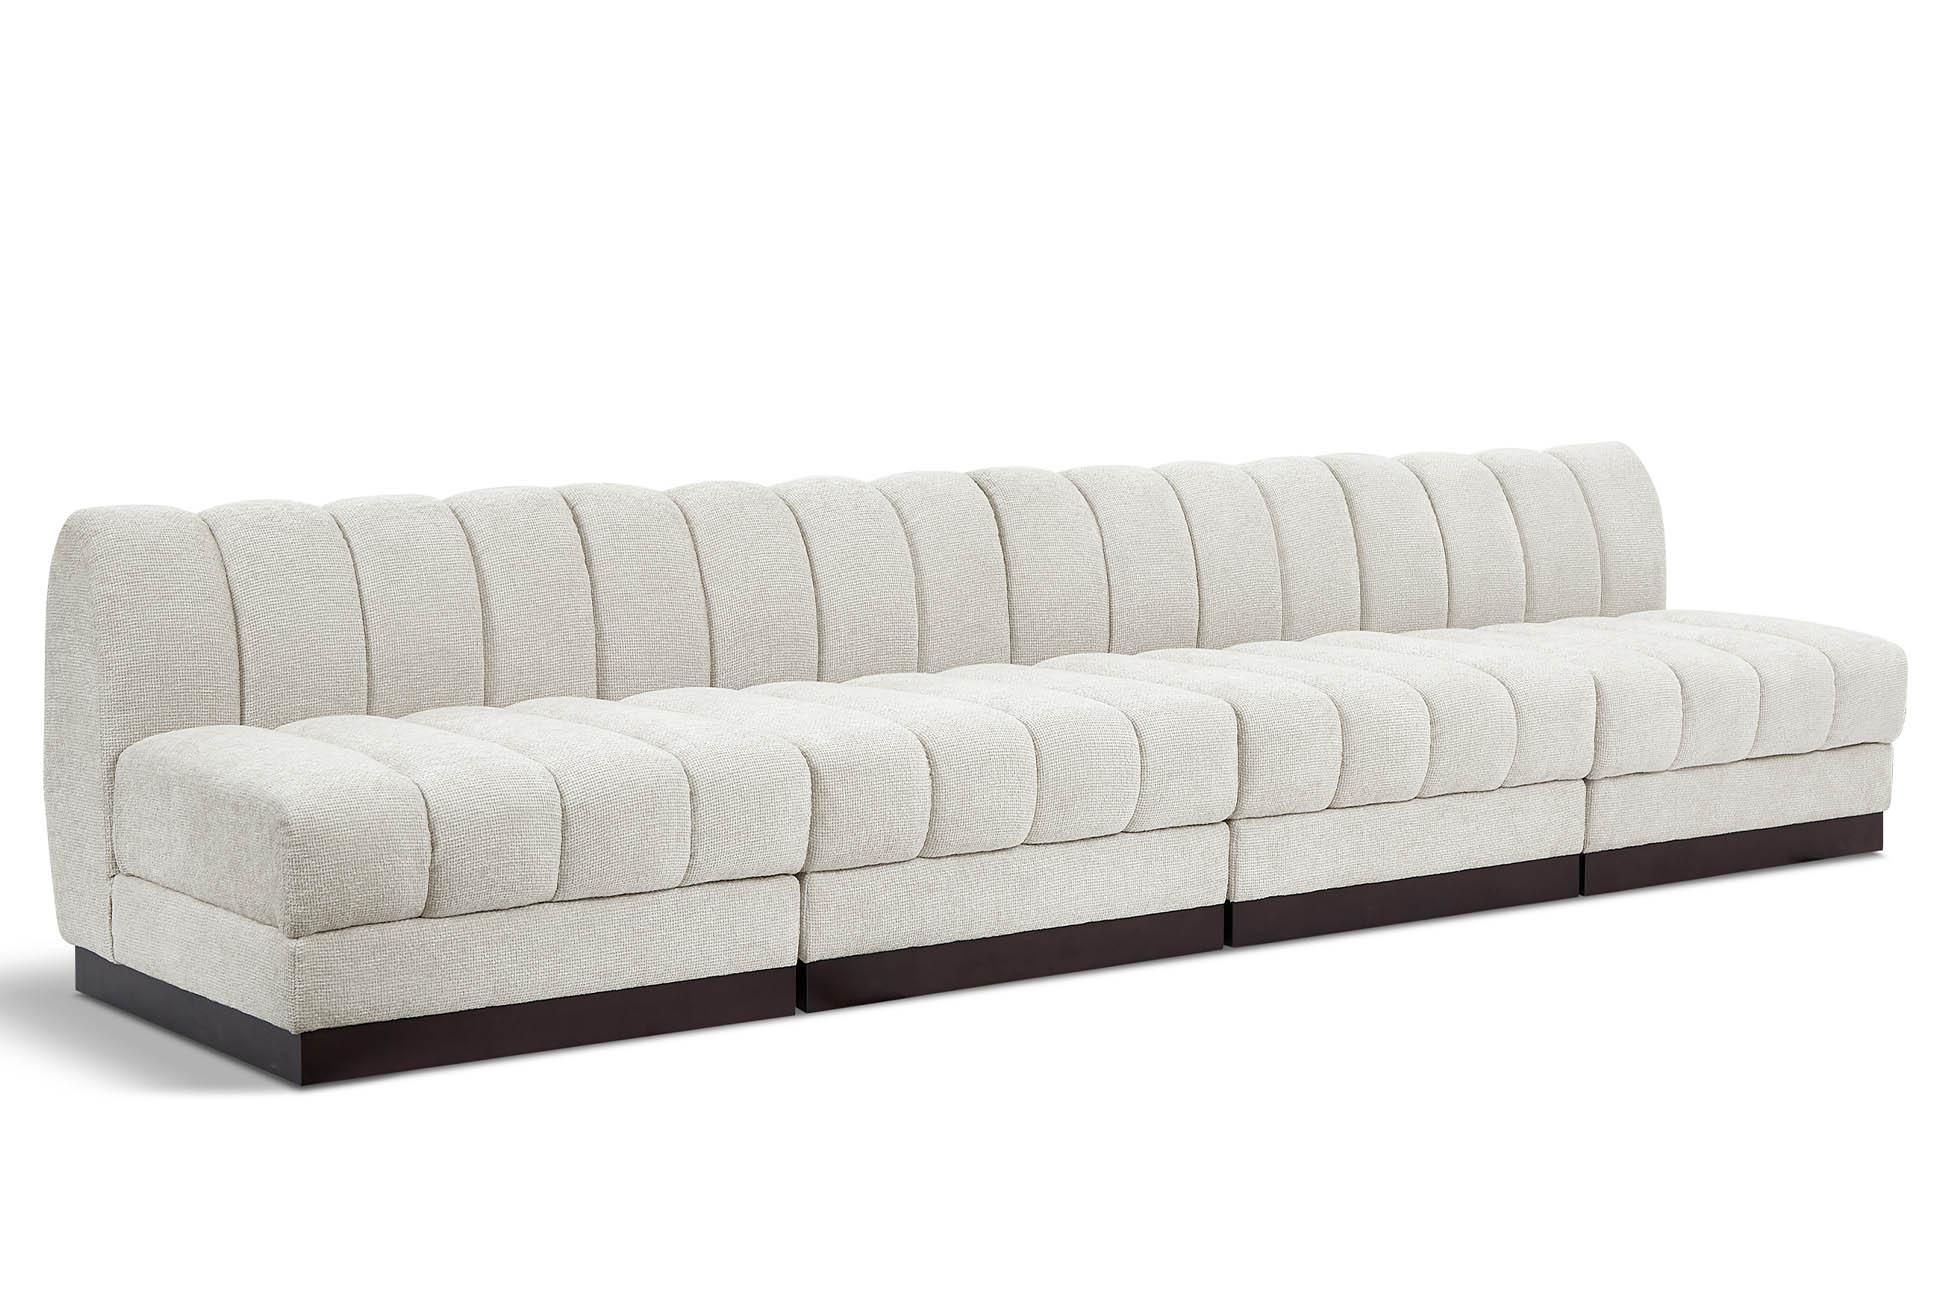 Contemporary, Modern Modular Sofa QUINN 124Cream-S128 124Cream-S128 in Cream Chenille